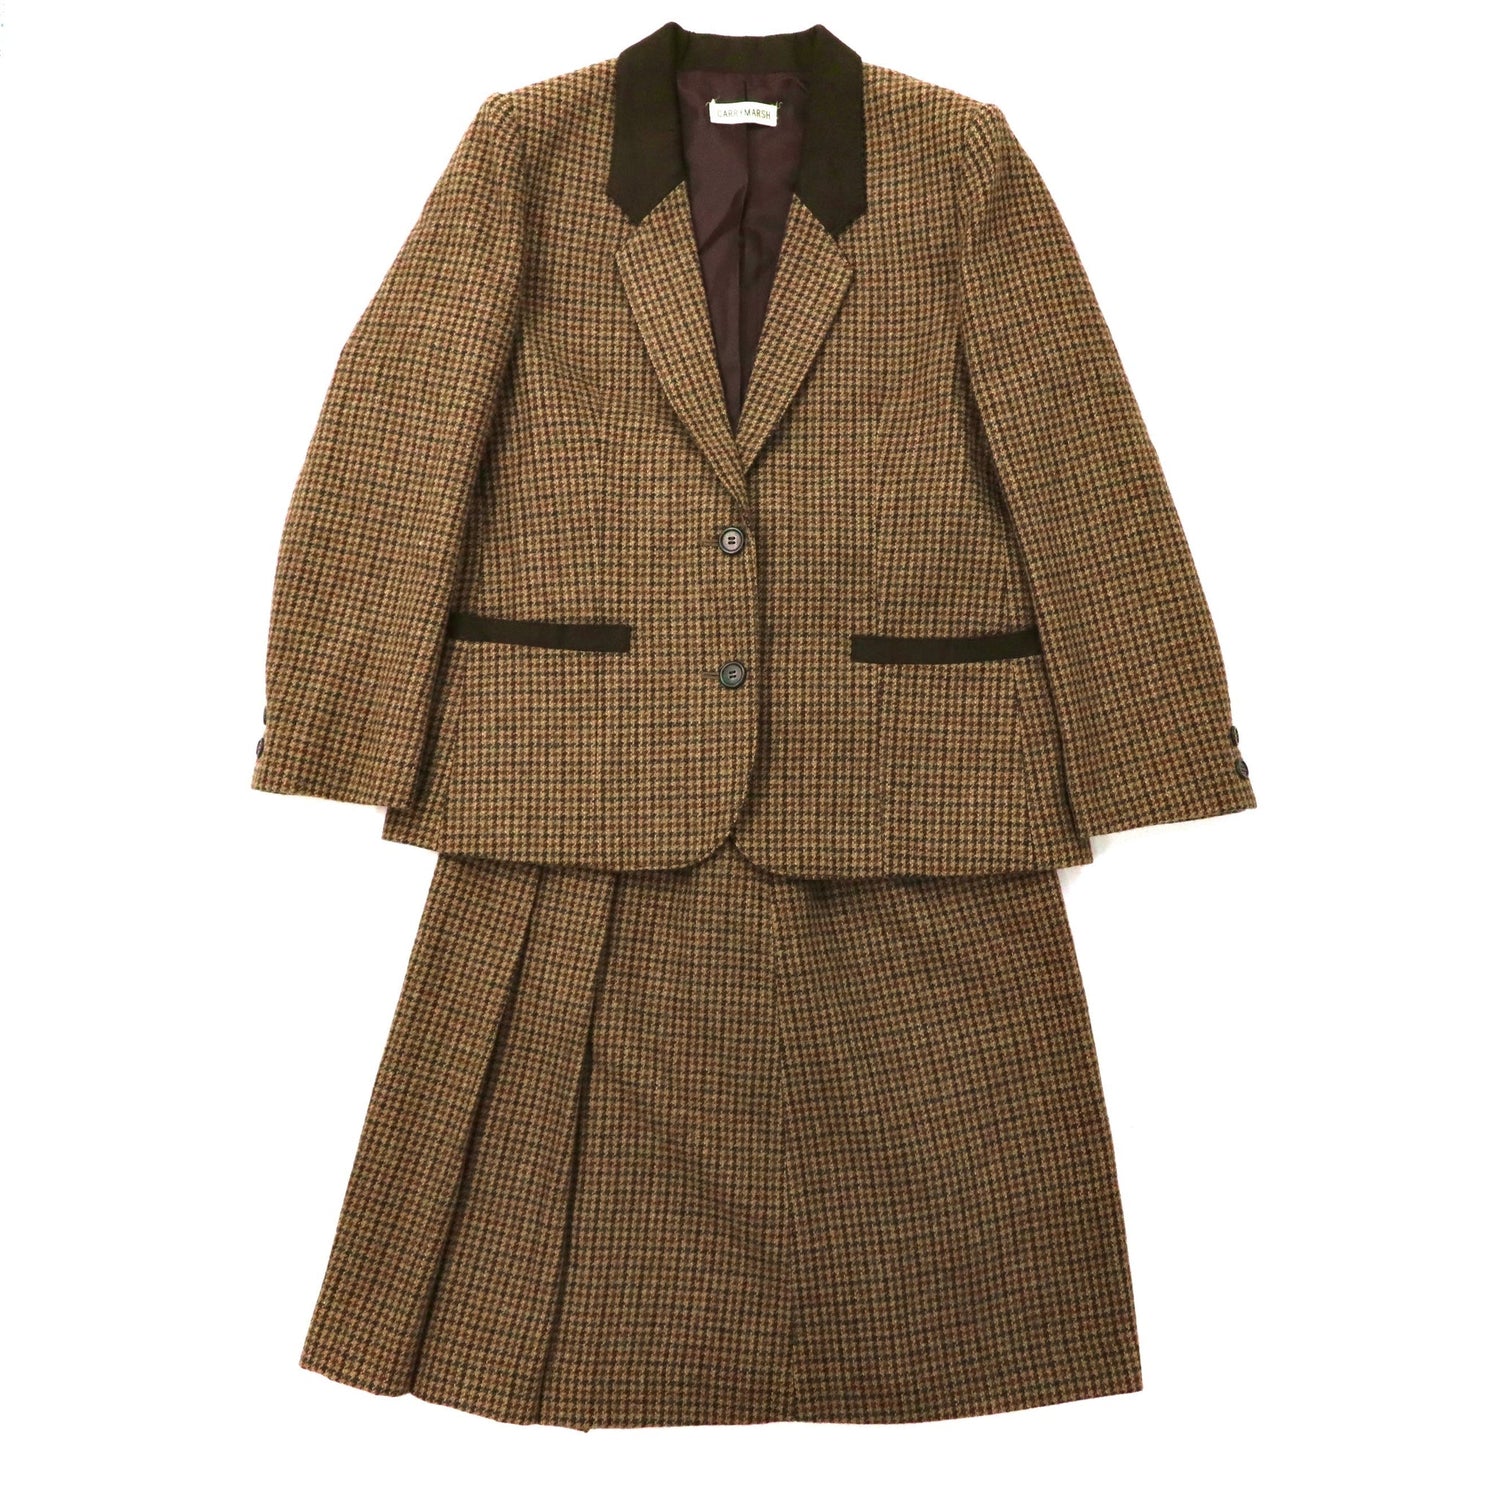 CARRYMARSH Tweed Jacket Retro Setup Suit 9AB2 Brown CHECKED Wool